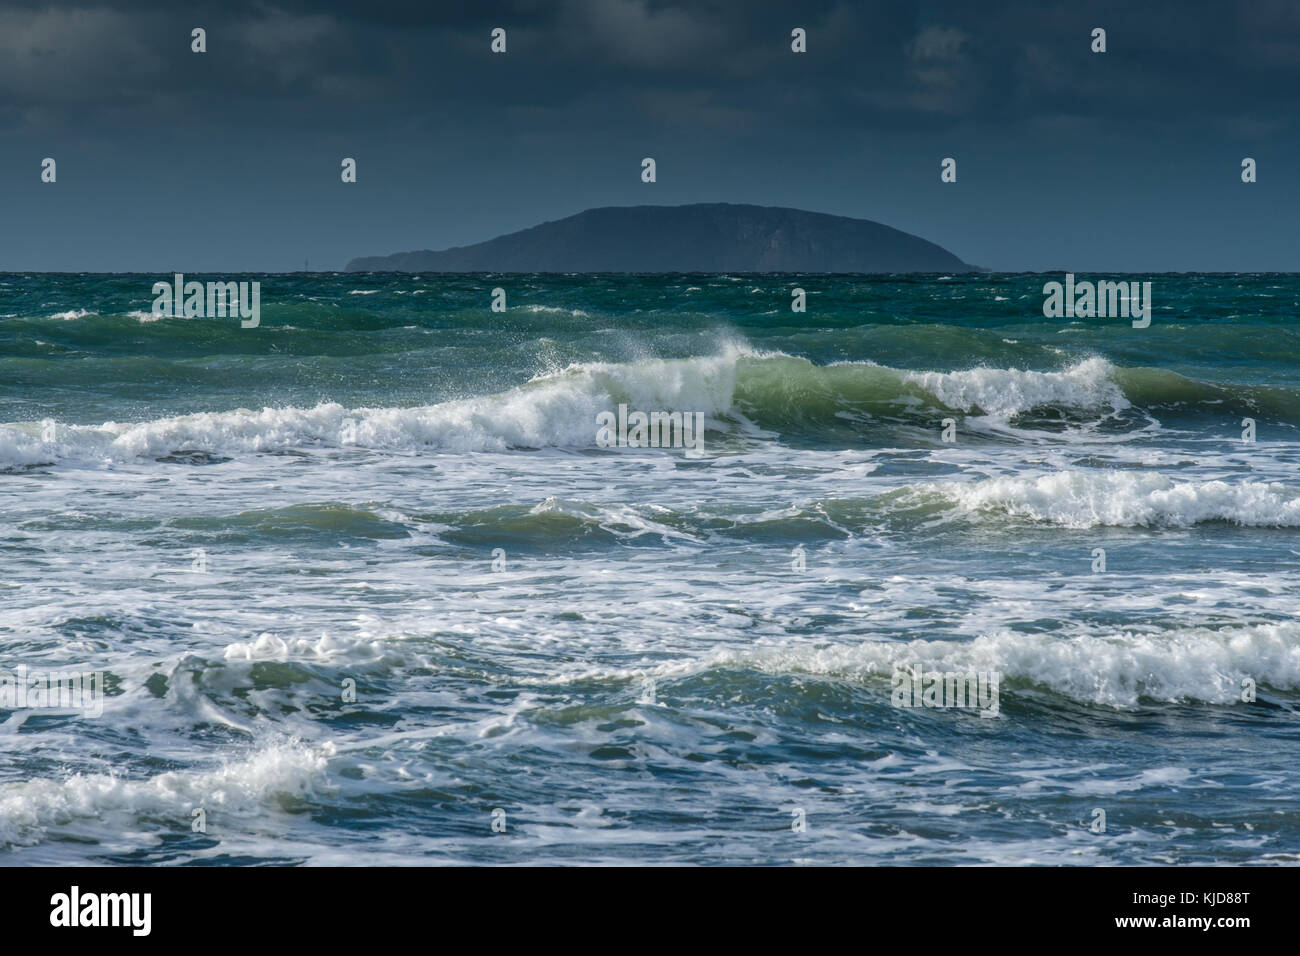 Waves crash onto Porth Neigwl beach, with Bardsey Island in the distance, near Abersoch, Llyn Penninsula, Gwynedd, Wales Stock Photo